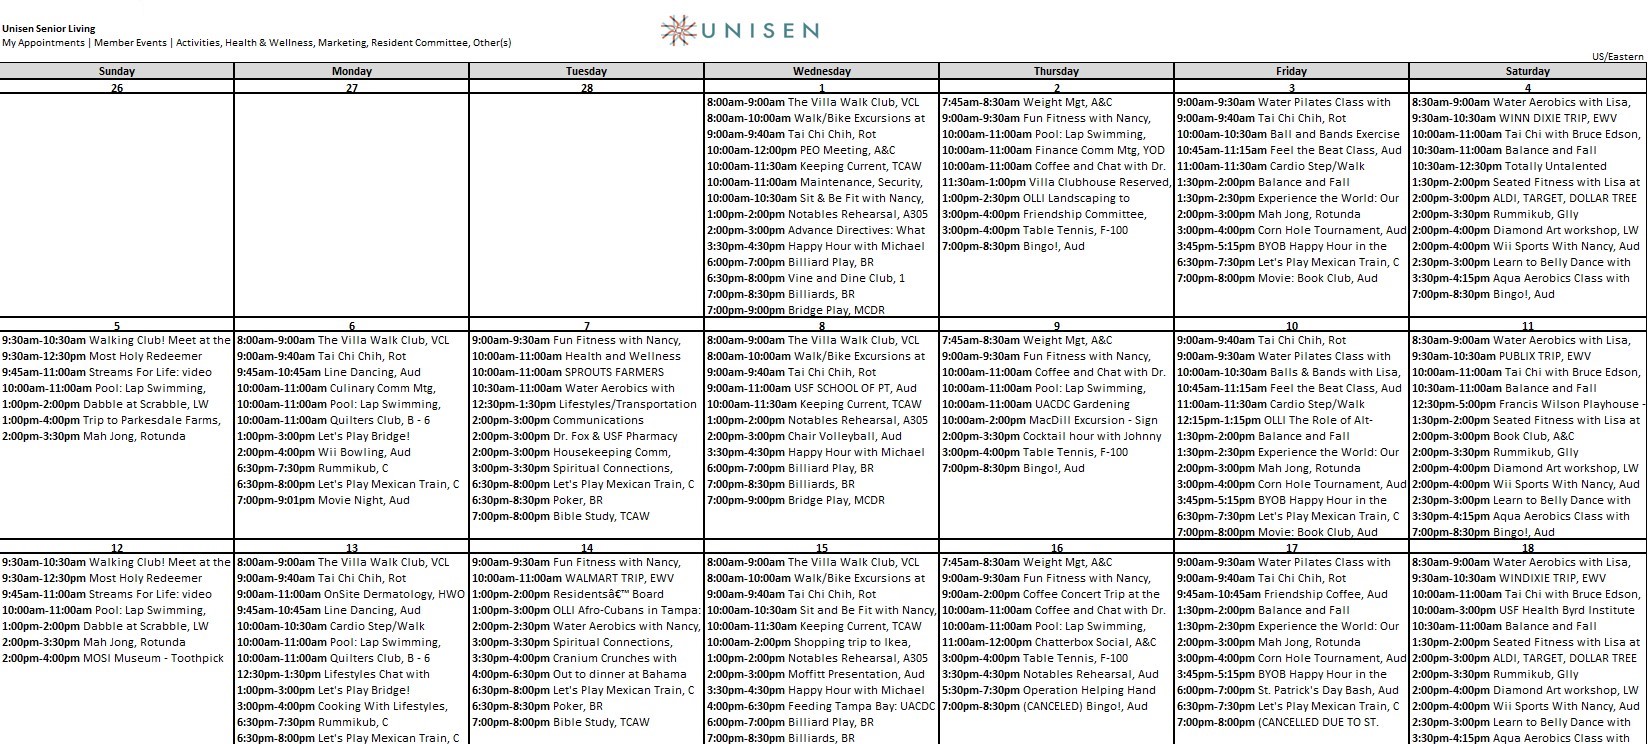 sample calendar of resident programs offered at Unisen Senior Living